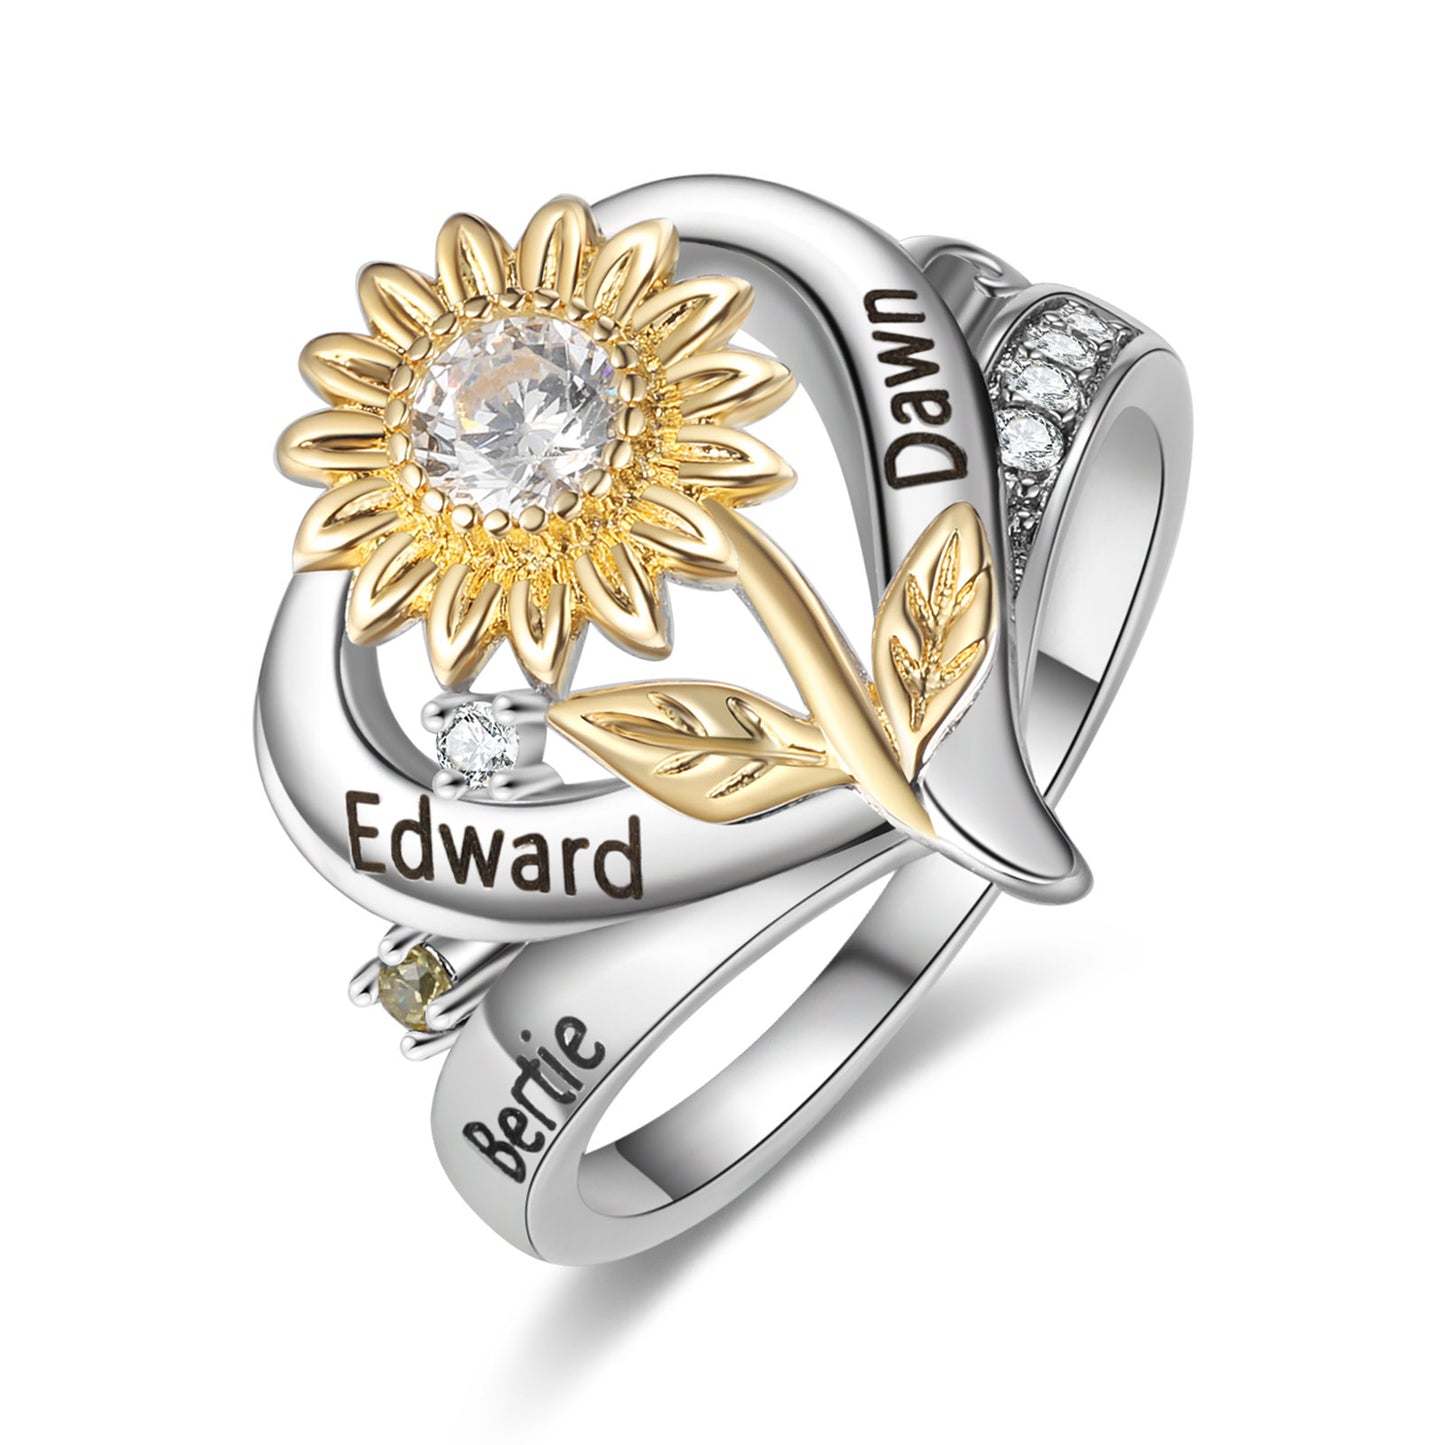 Custom Sunflower and Heart Ring